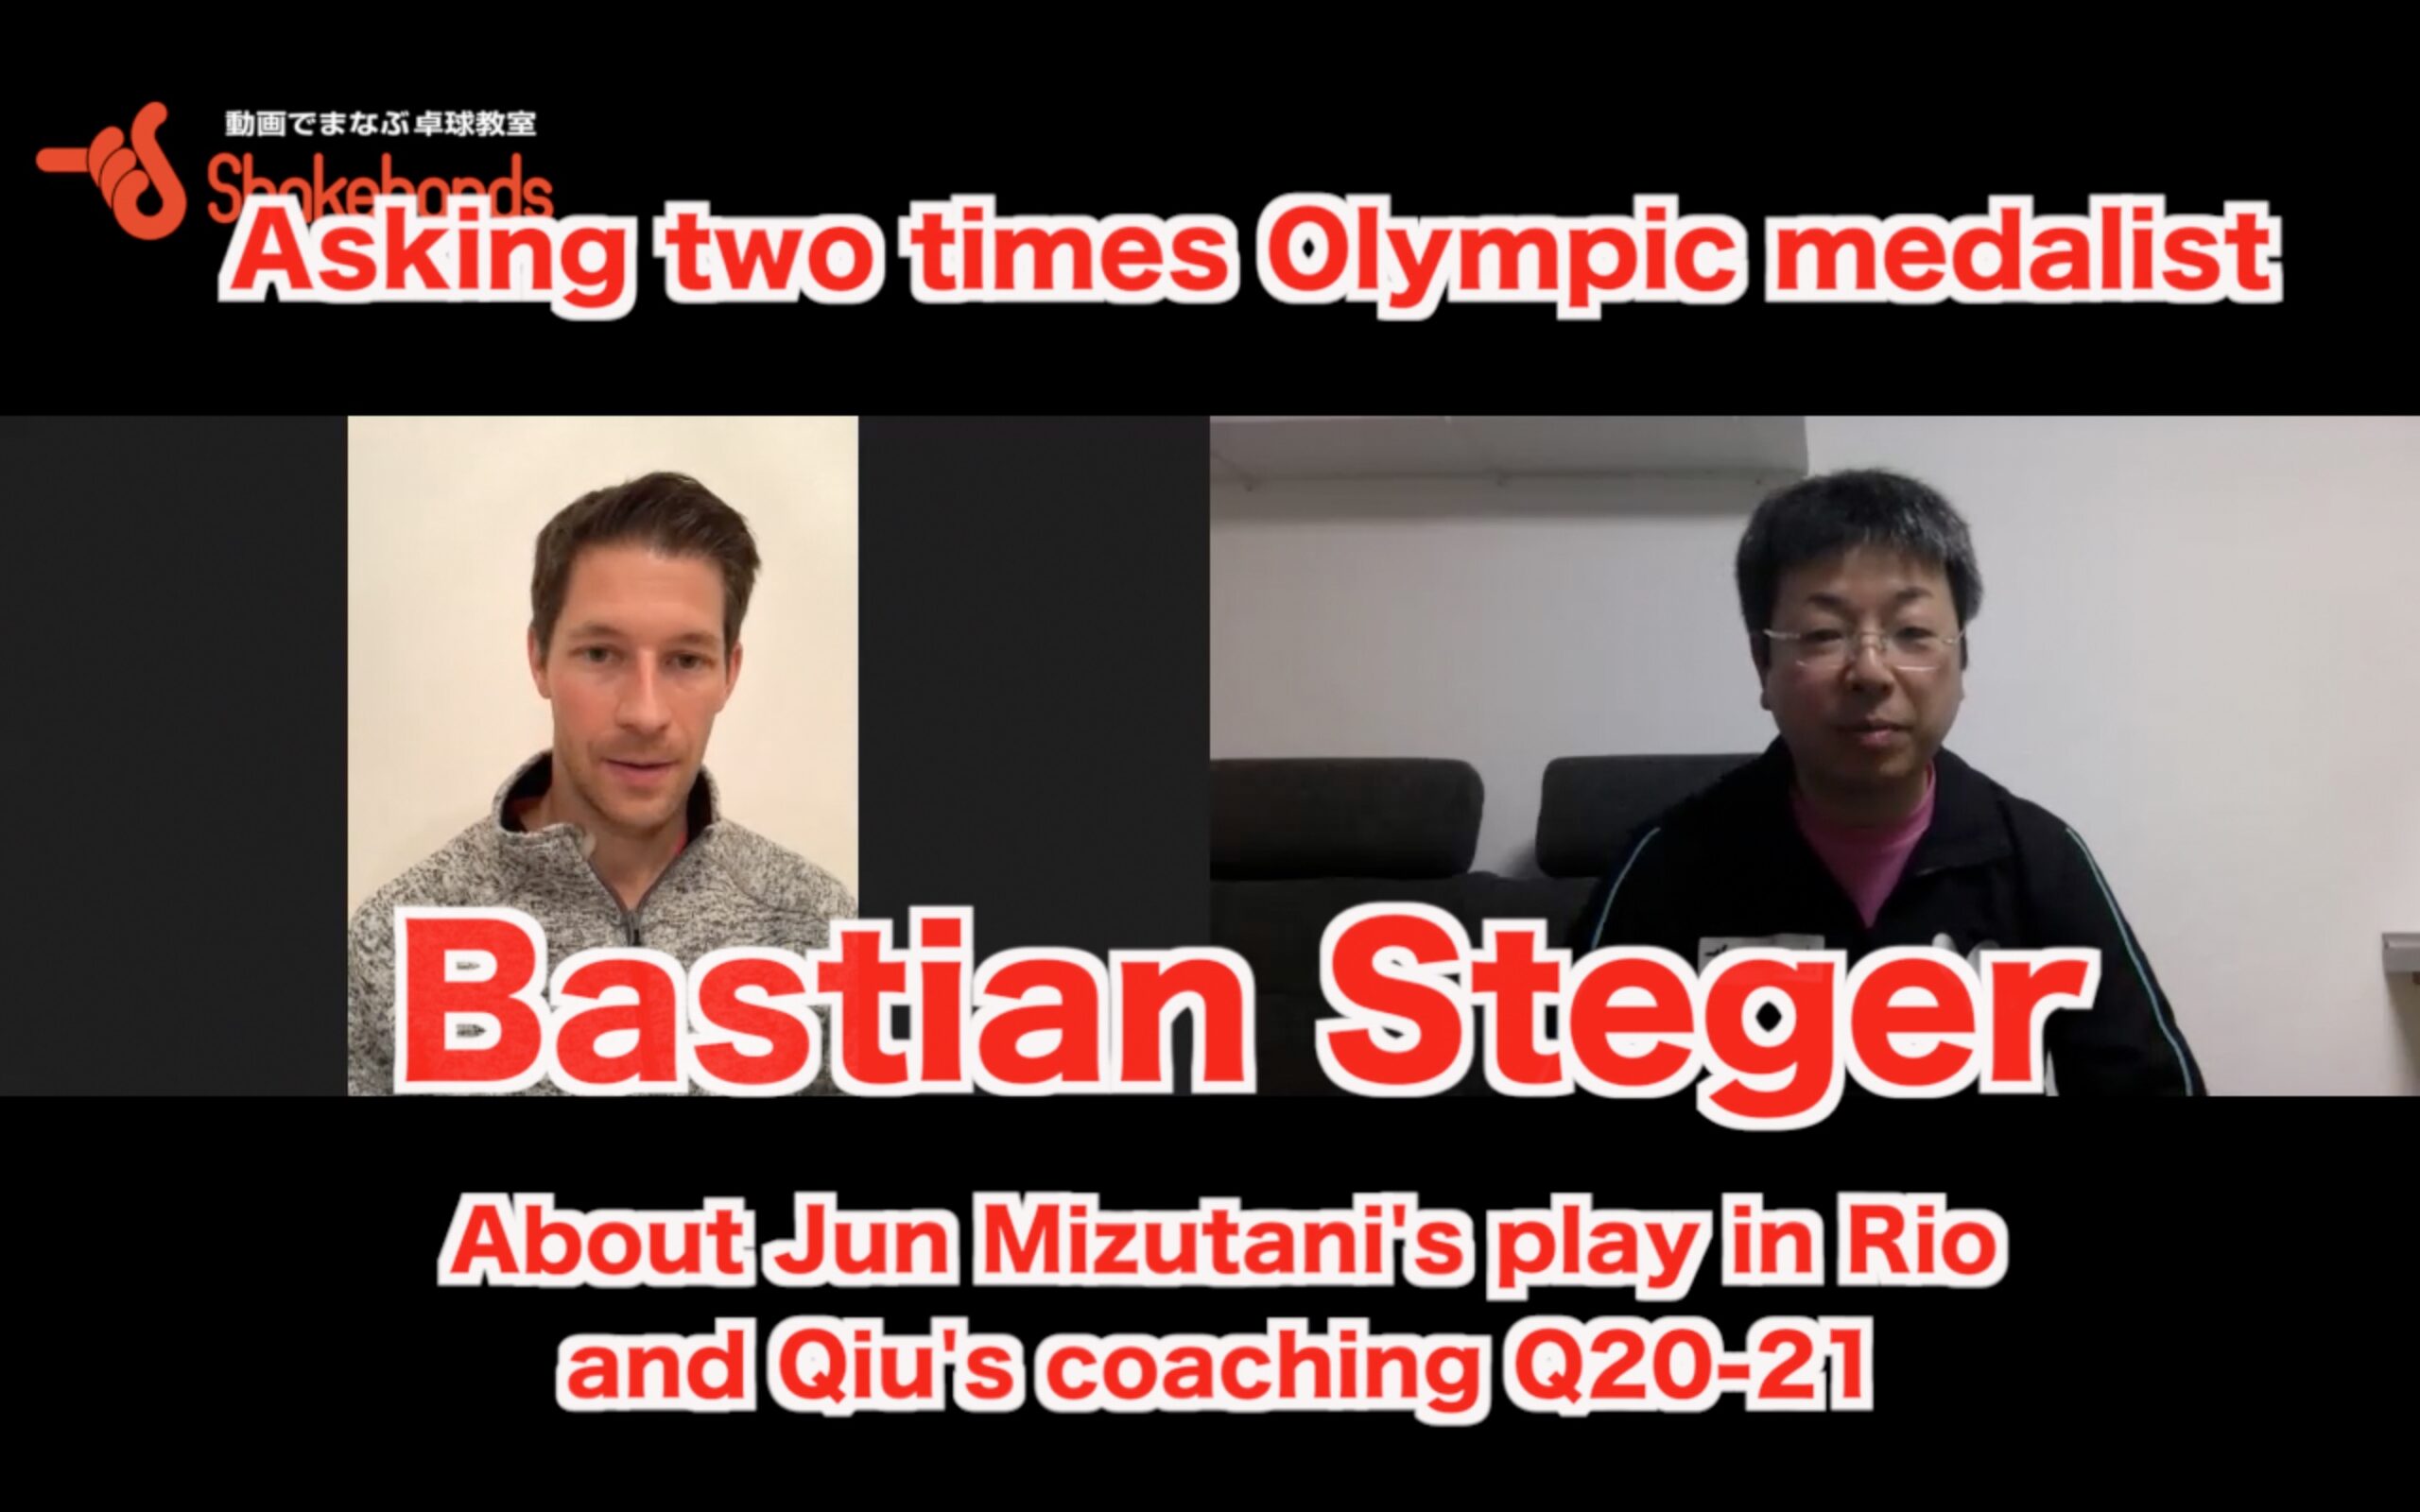 About Jun Mizutani's play in Rio and Qiu's coaching Q20-21